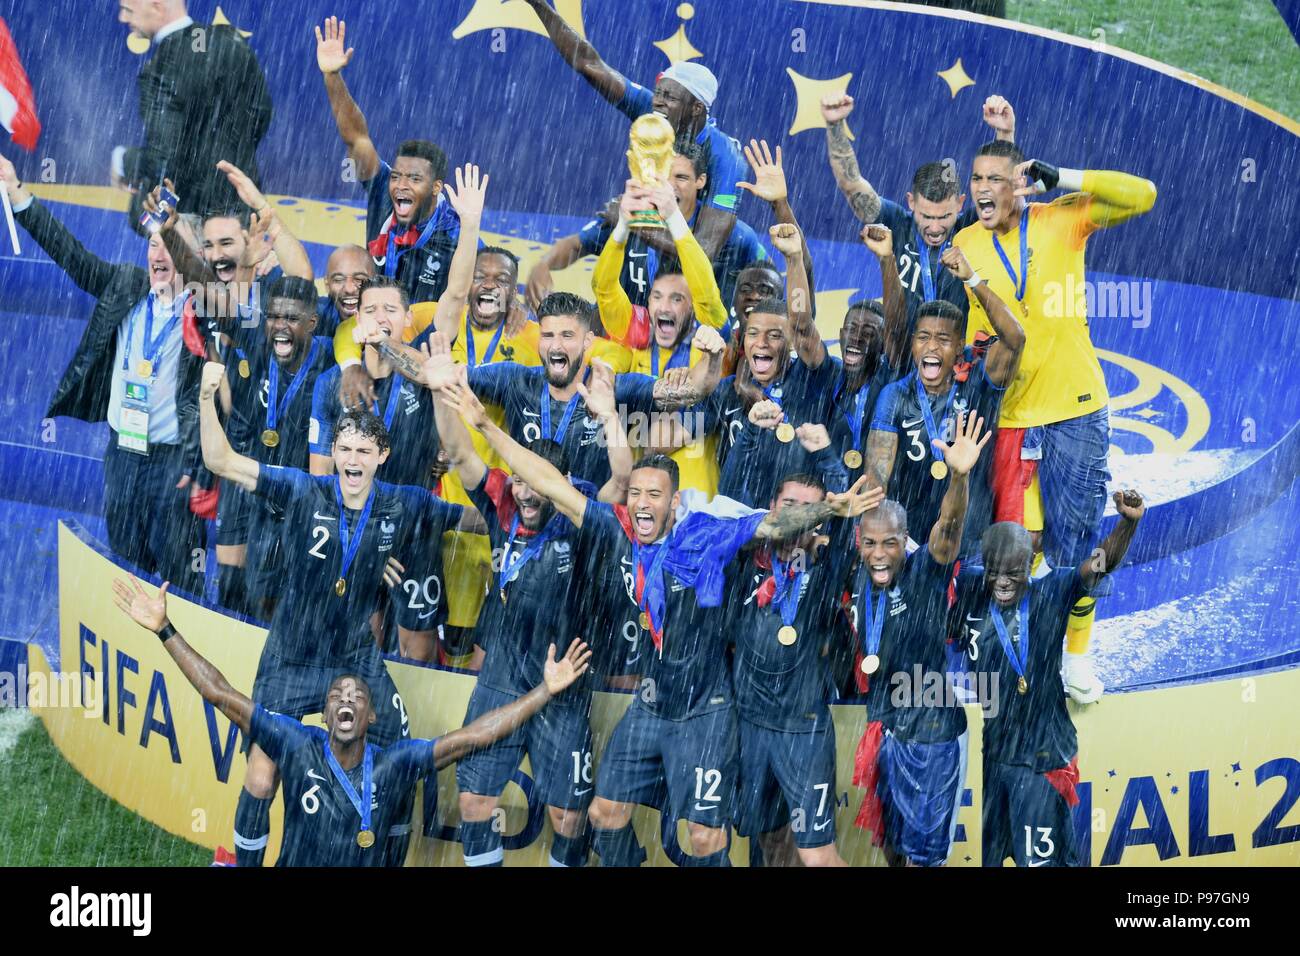 Moscou, Russie. 15 juillet 2018, la France l'équipe de football de leur victoire célébrat world cup 2018 Finale à Moscou, stade Luzhniki. Shoja Lak/Alamy Live News Banque D'Images